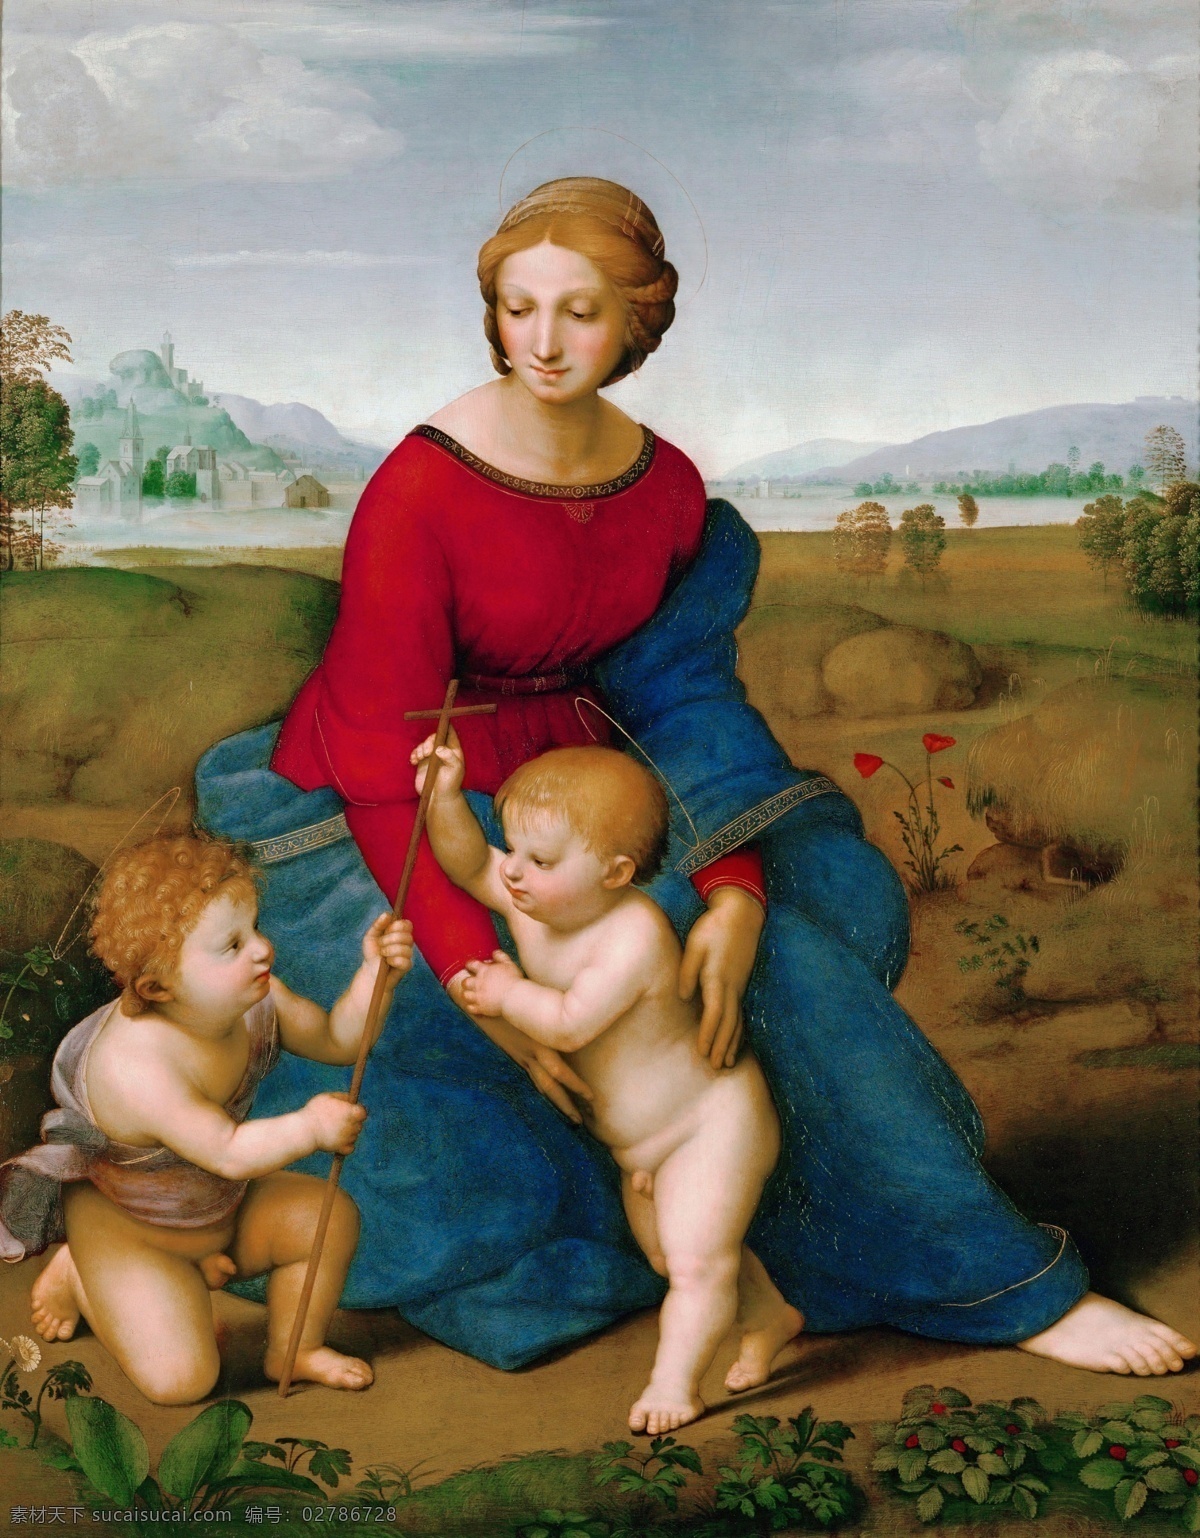 拉斐尔油画 拉斐尔作品 文艺复兴时期 意大利画家 国家艺术馆 拉斐尔 宗教艺术 圣母 绘画书法 文化艺术 耶稣 古典油画 人物 绘画 肖像